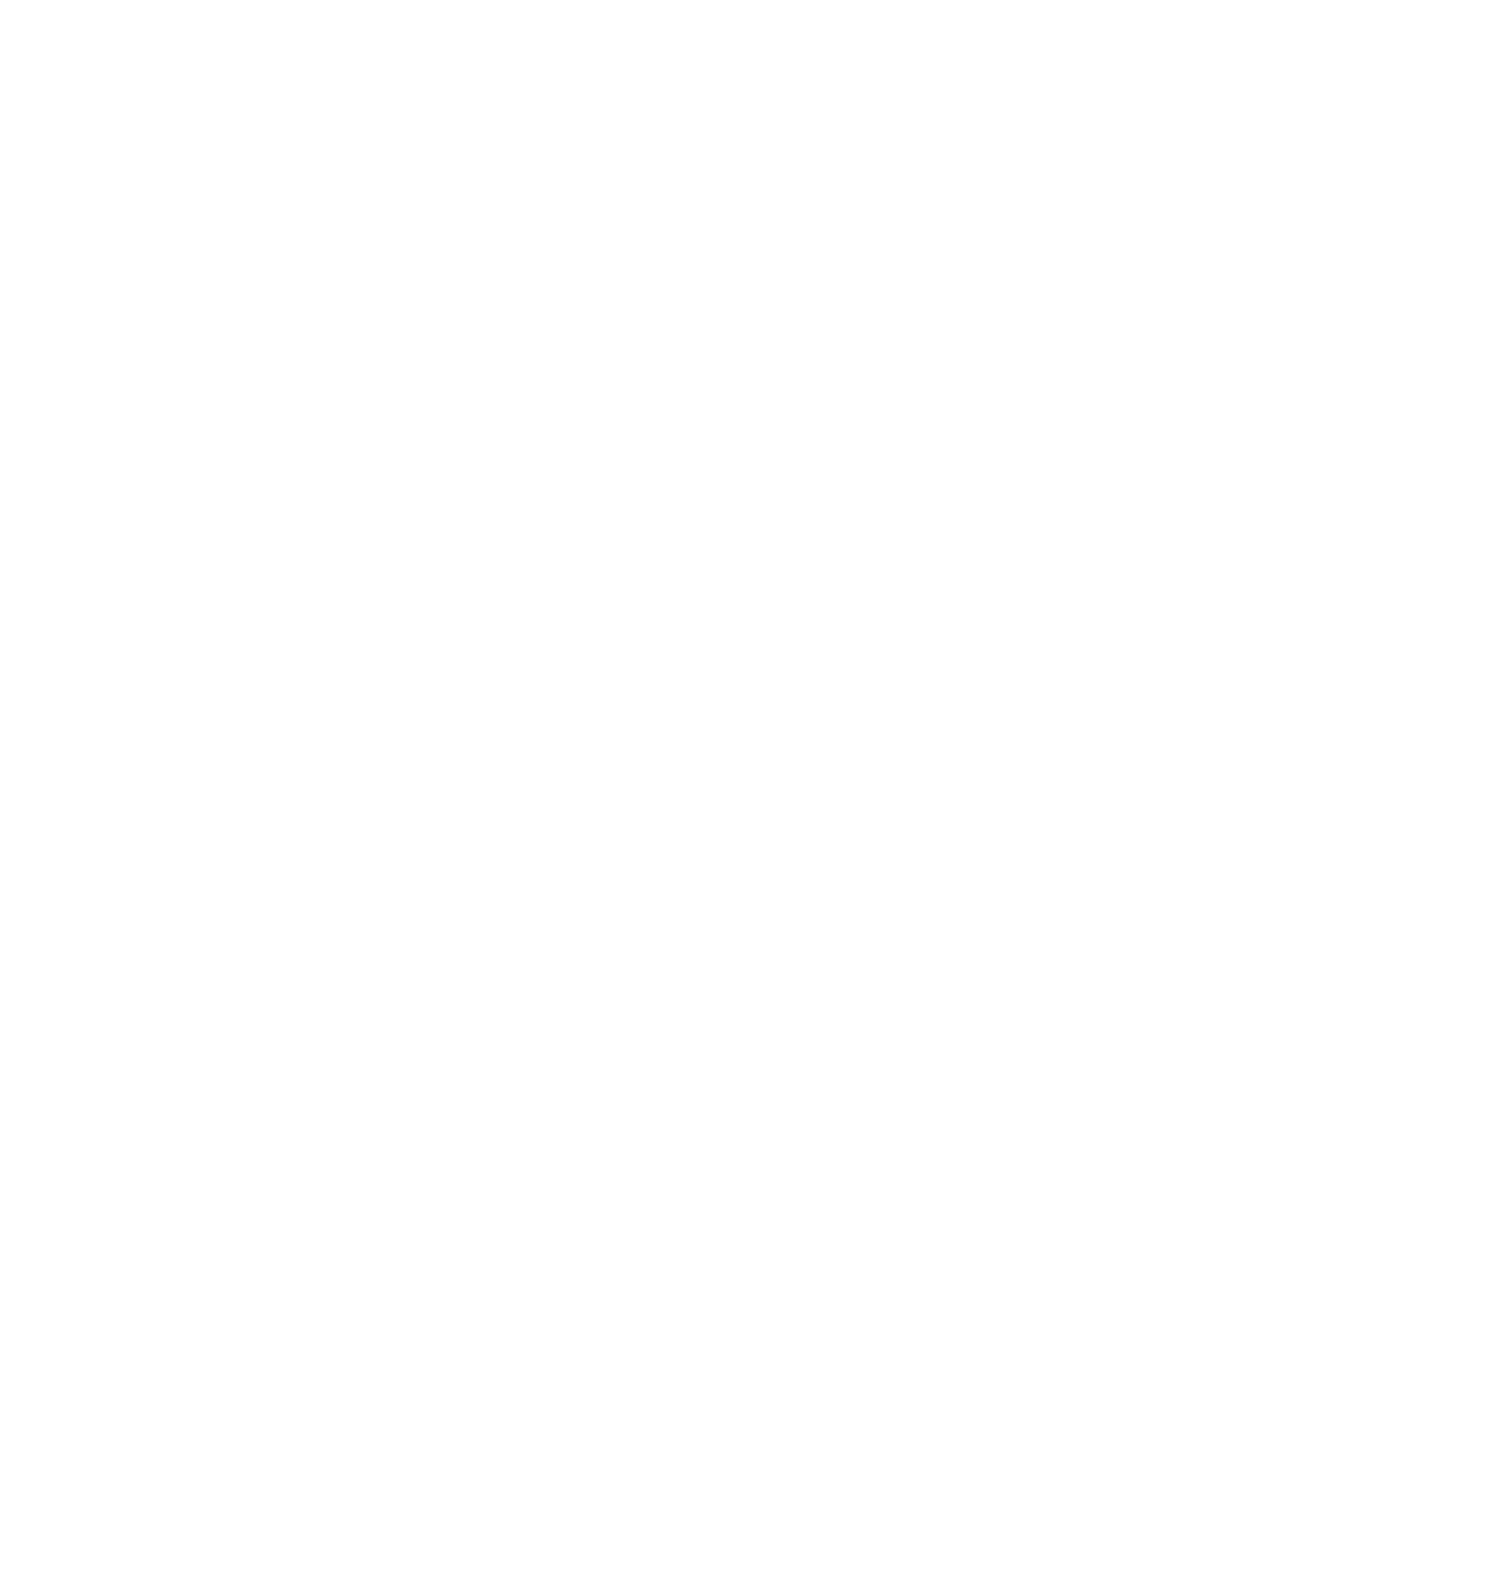 Loreen institute